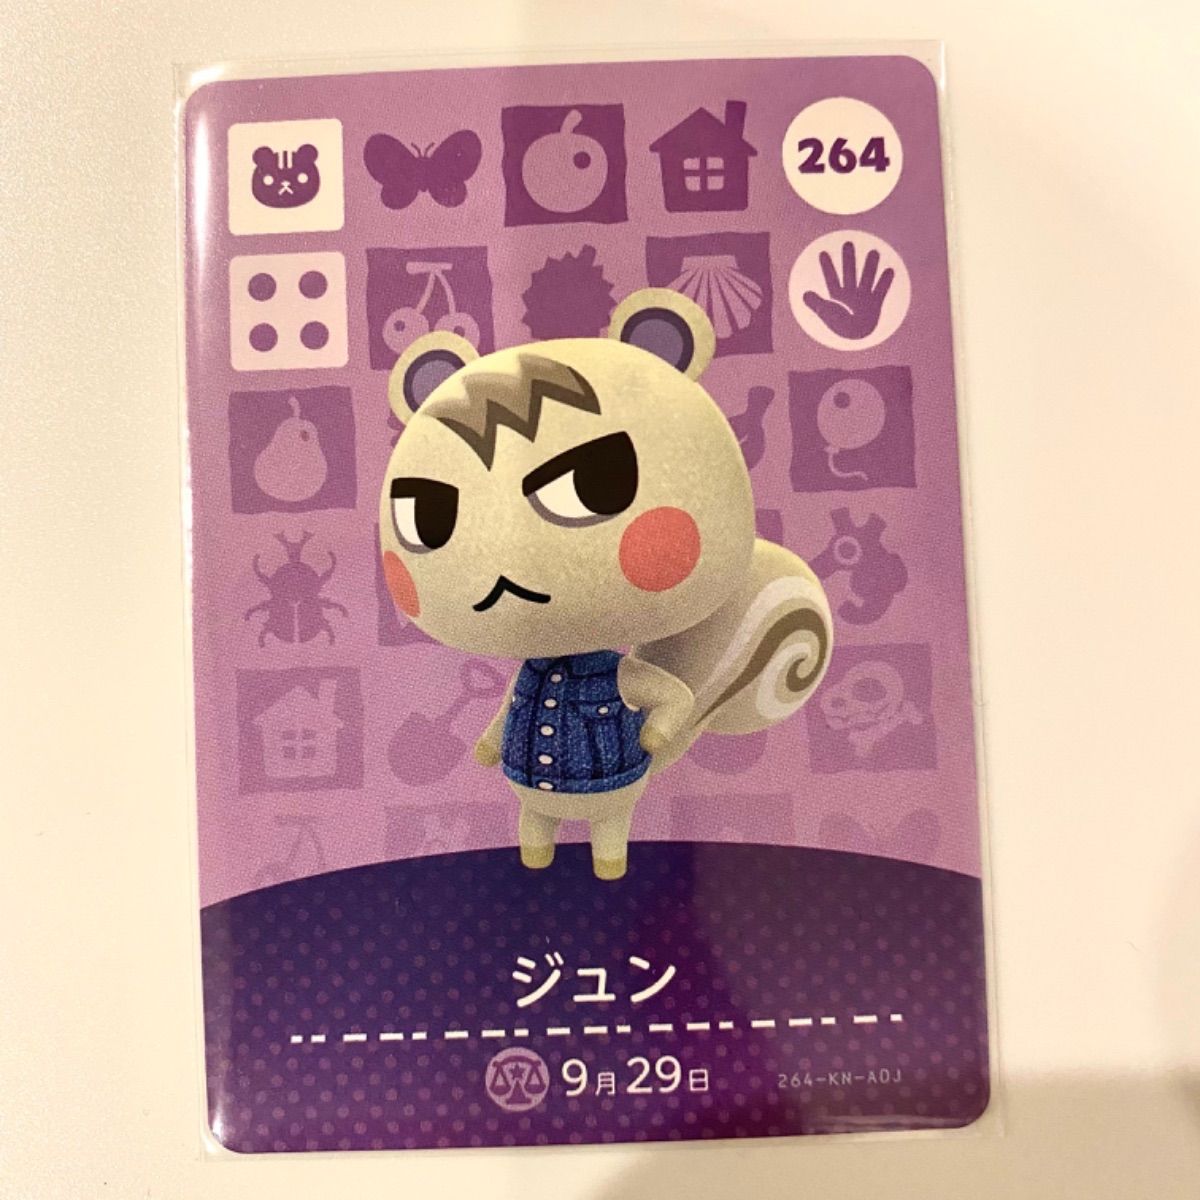 どうぶつの森 amiiboカード 第3弾 ジュン ☆264☆カード - カード